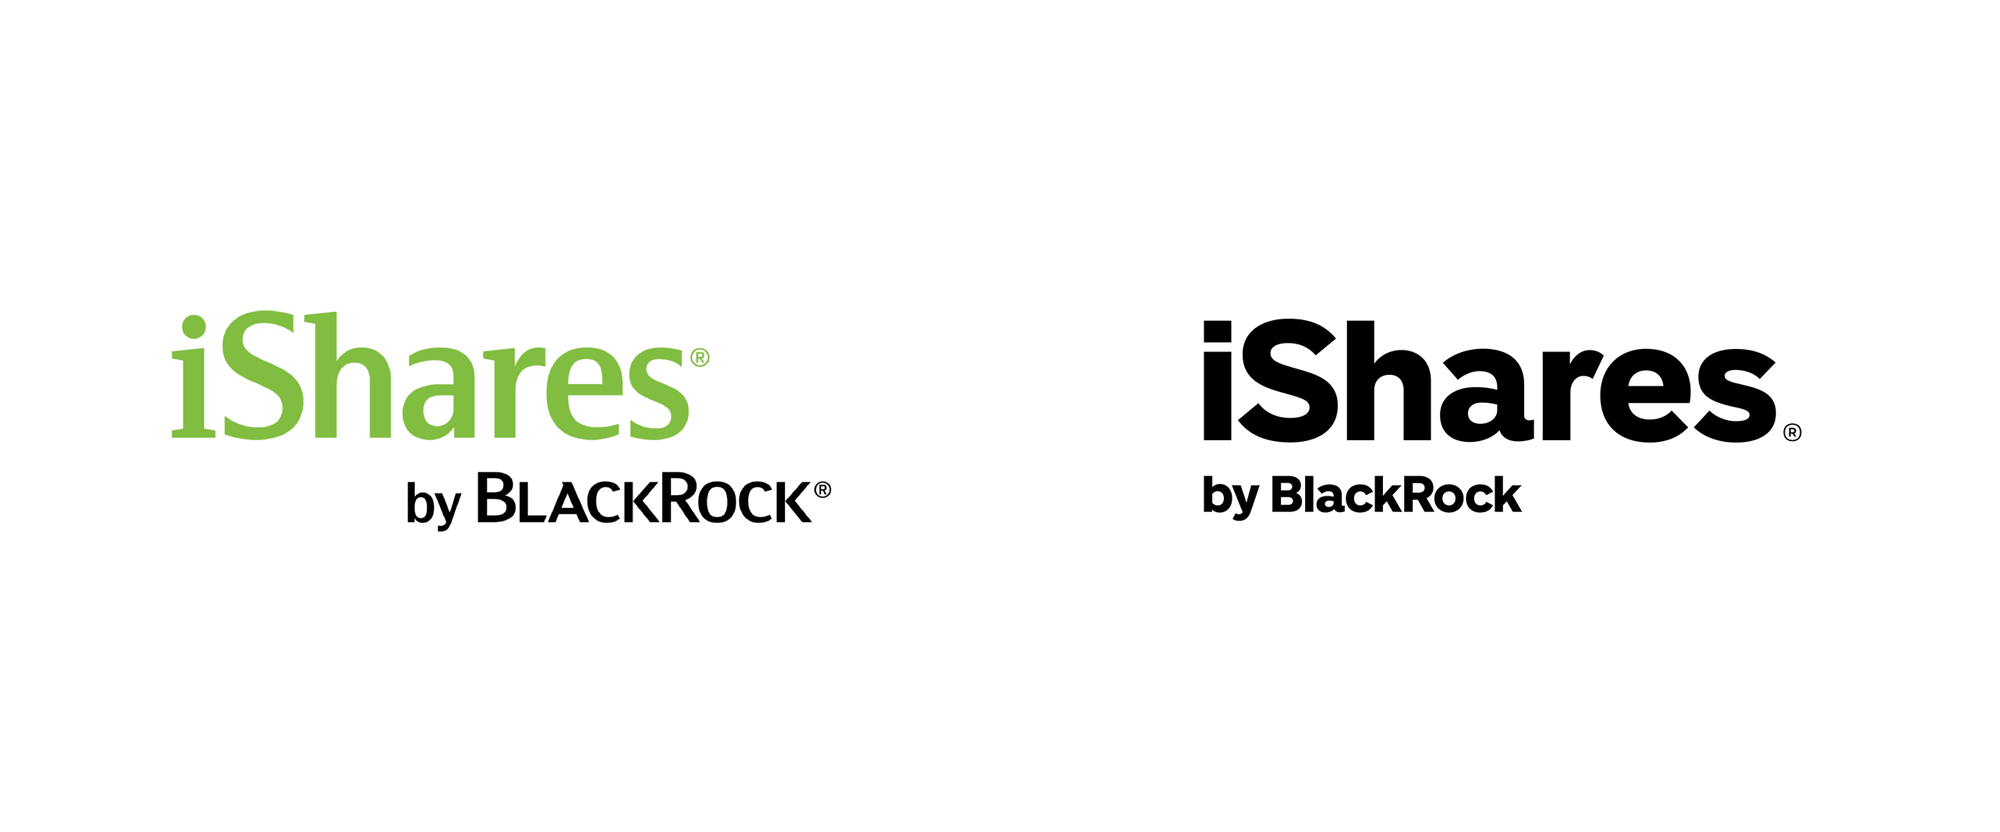 Blackrock Logo - LogoDix